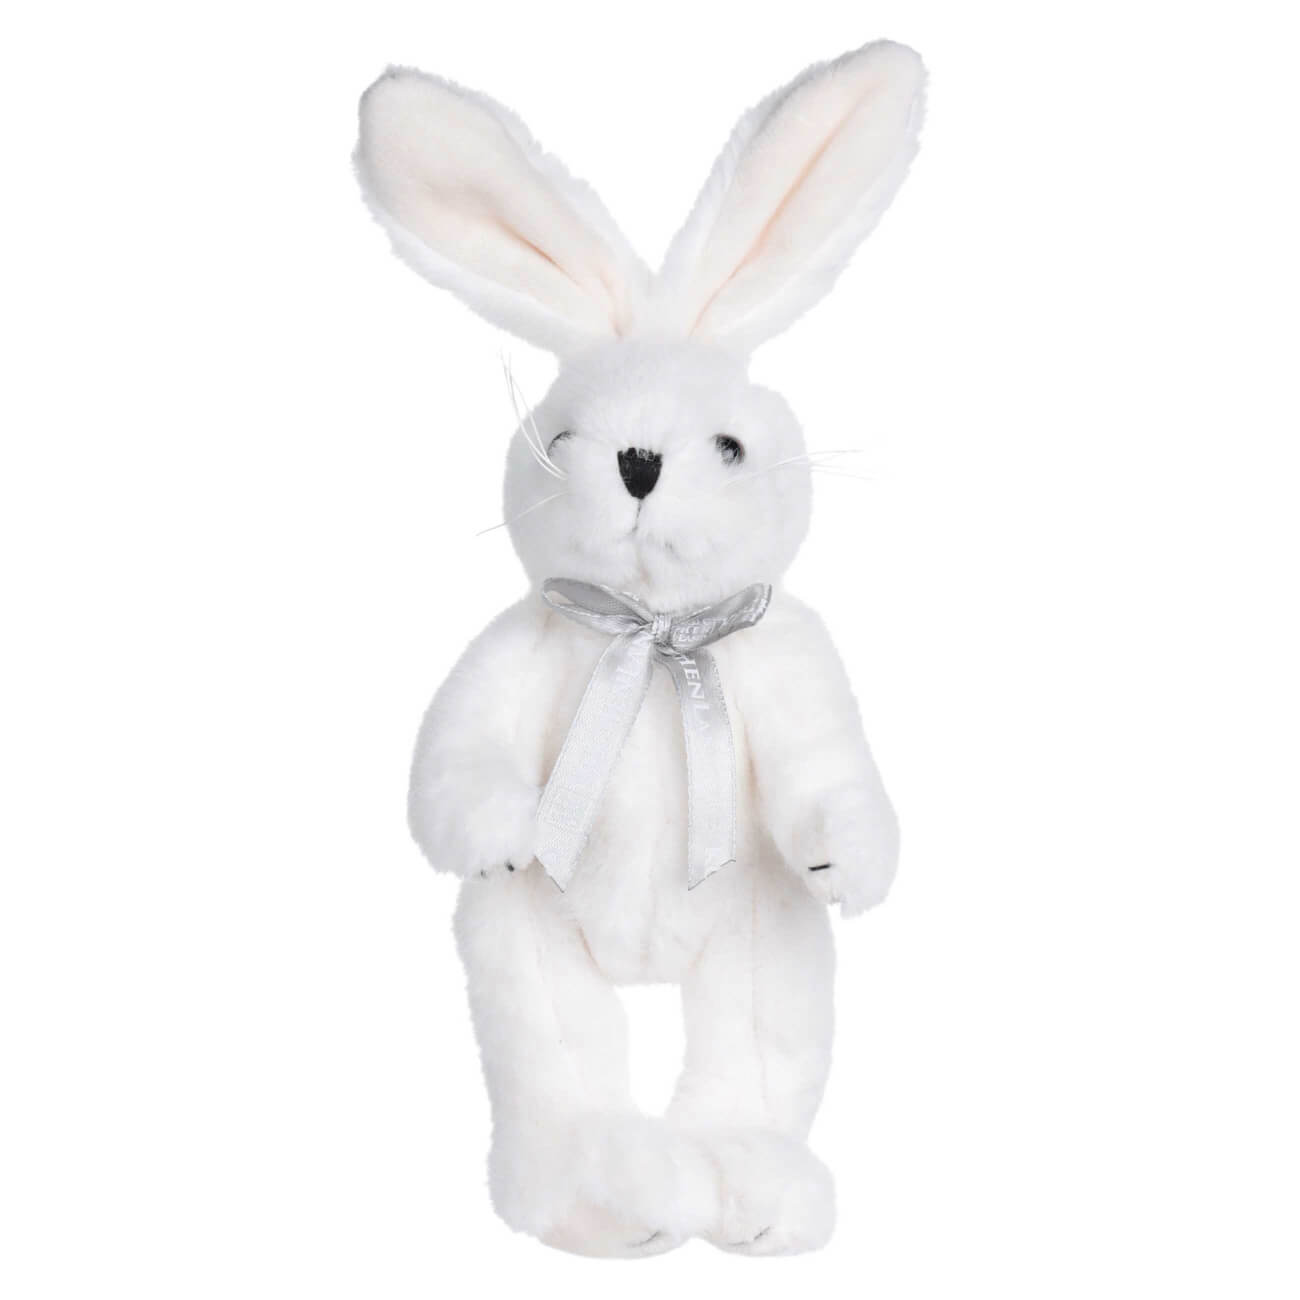 Игрушка, 20 см, мягкая, с подвижными лапами, полиэстер, белая, Кролик, Rabbit toy игрушка konik осёл